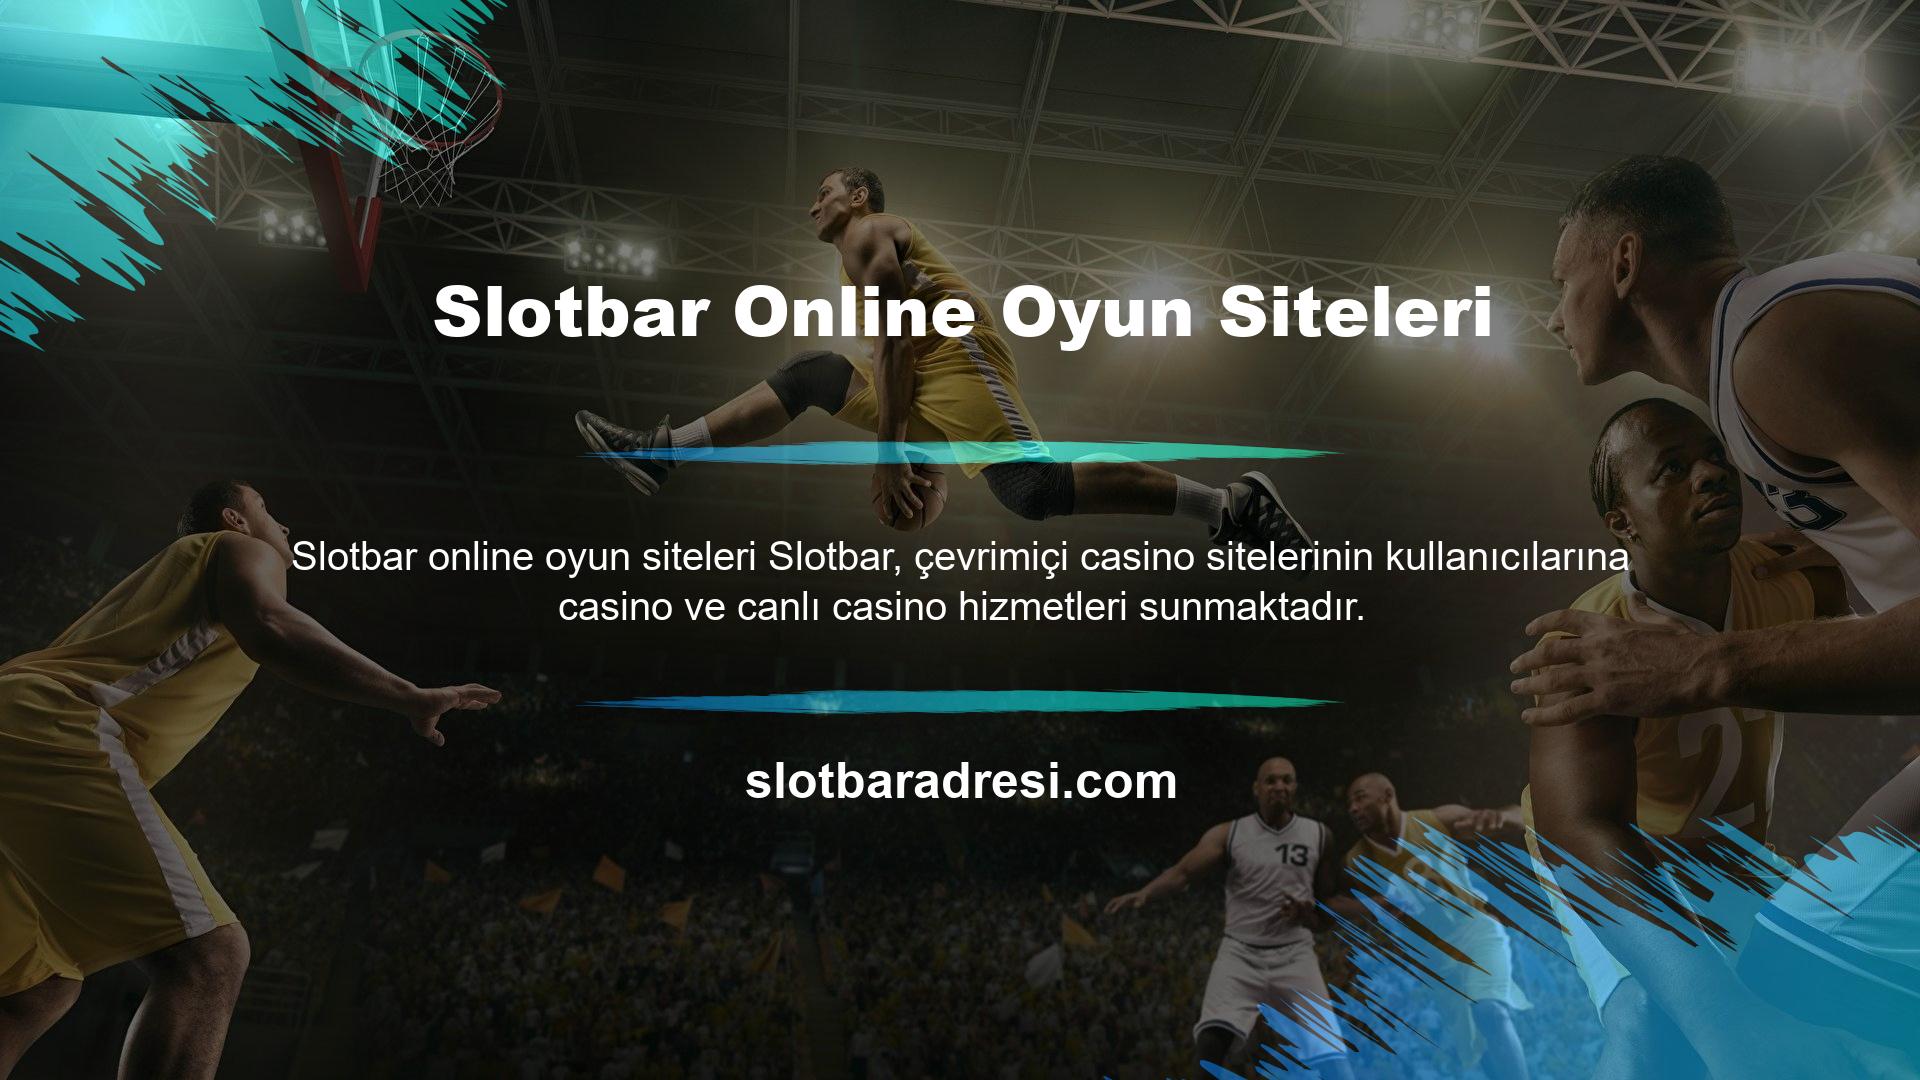 Slotbar Canlı Casino İçeriği;

	Canlı Krupiyeler
	Çevrimiçi Oyuncularla Sohbet Edin
	Dijital Casino Oyunları
	Dijital Rulet
	Sic Bo
	Poker

Bunun gibi sayıyla bitmeyen çok daha fazlası var